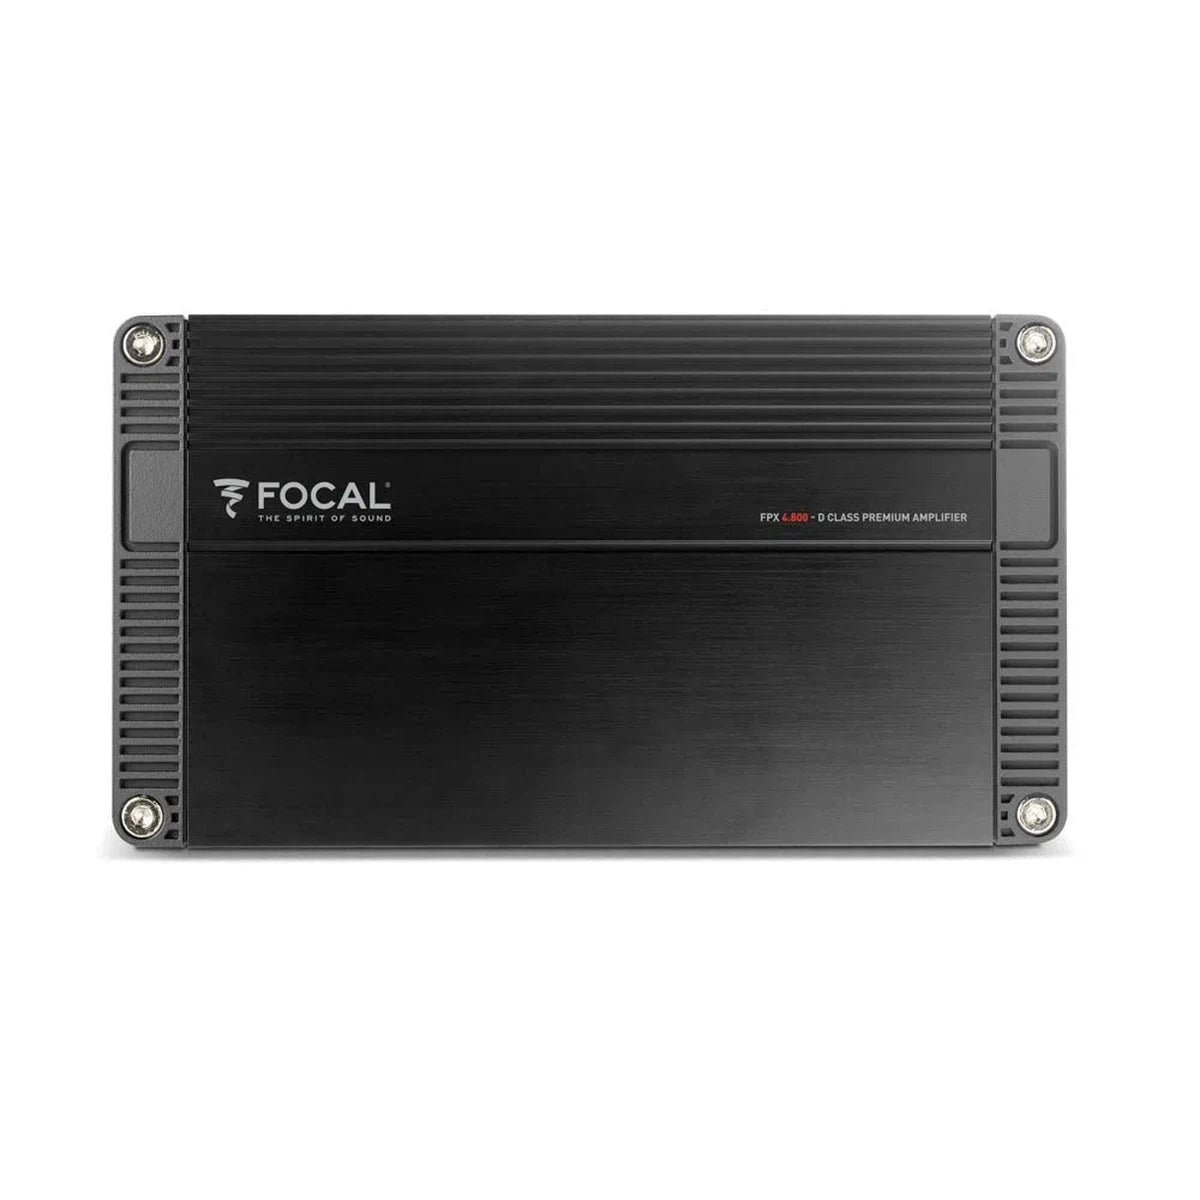 Focal-FPX4.800-4-Kanal Verstärker-Masori.de